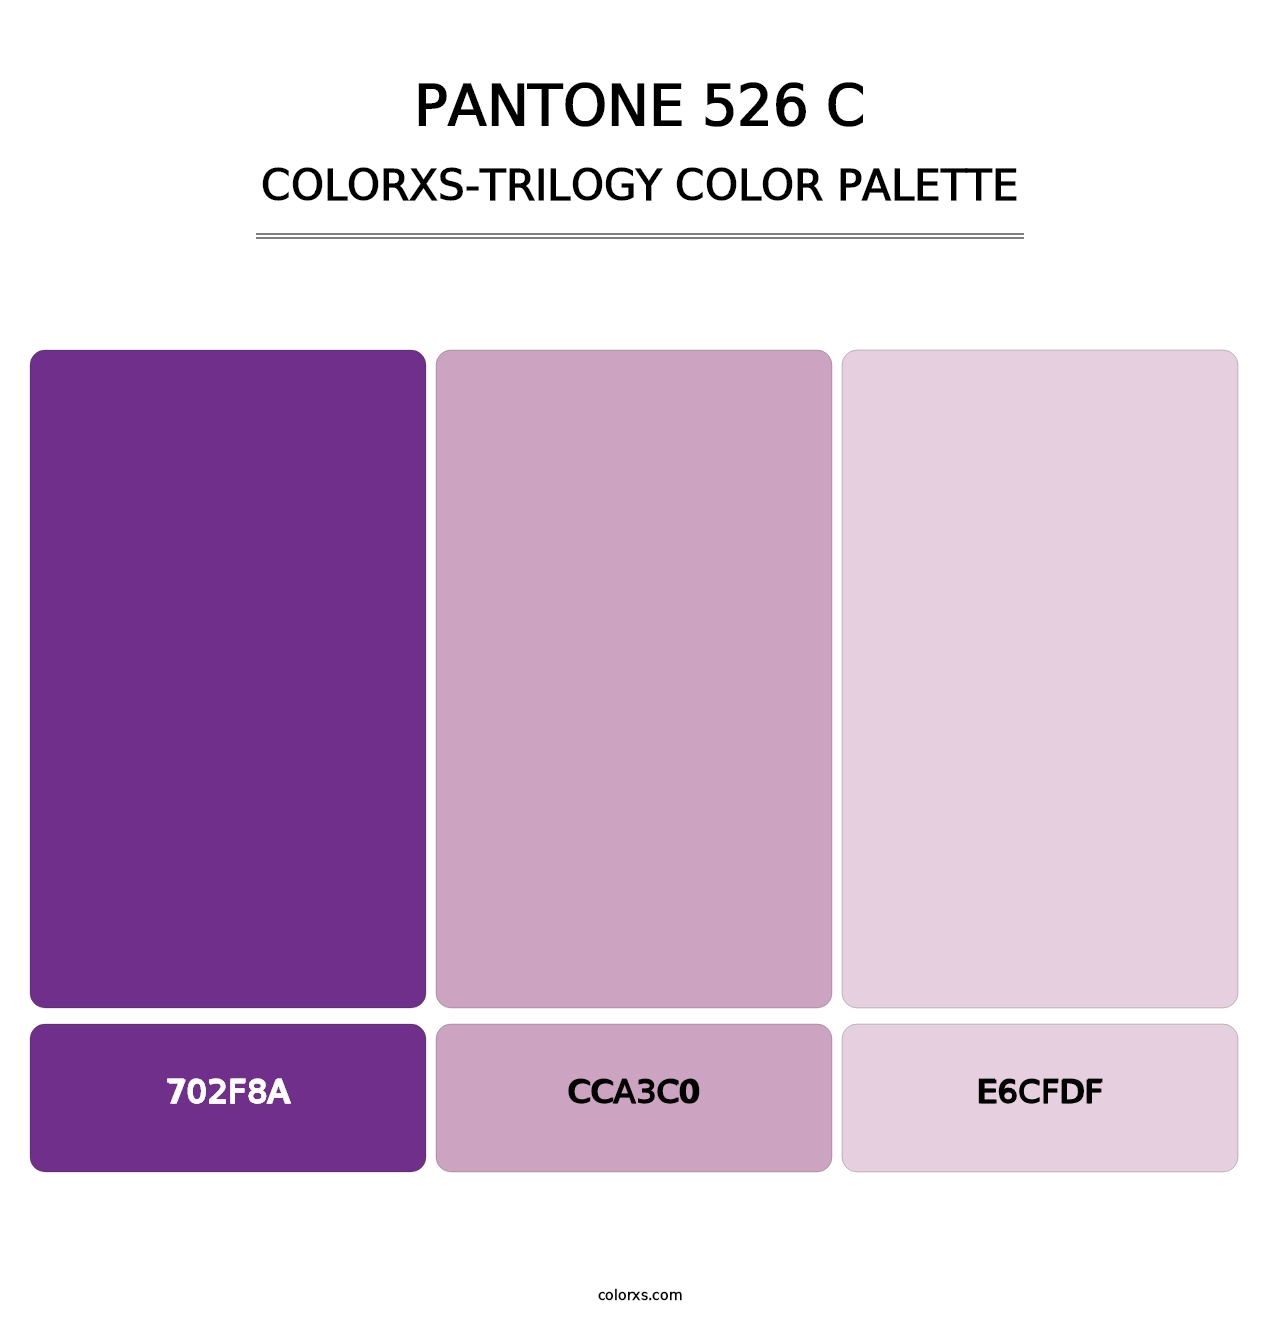 PANTONE 526 C - Colorxs Trilogy Palette